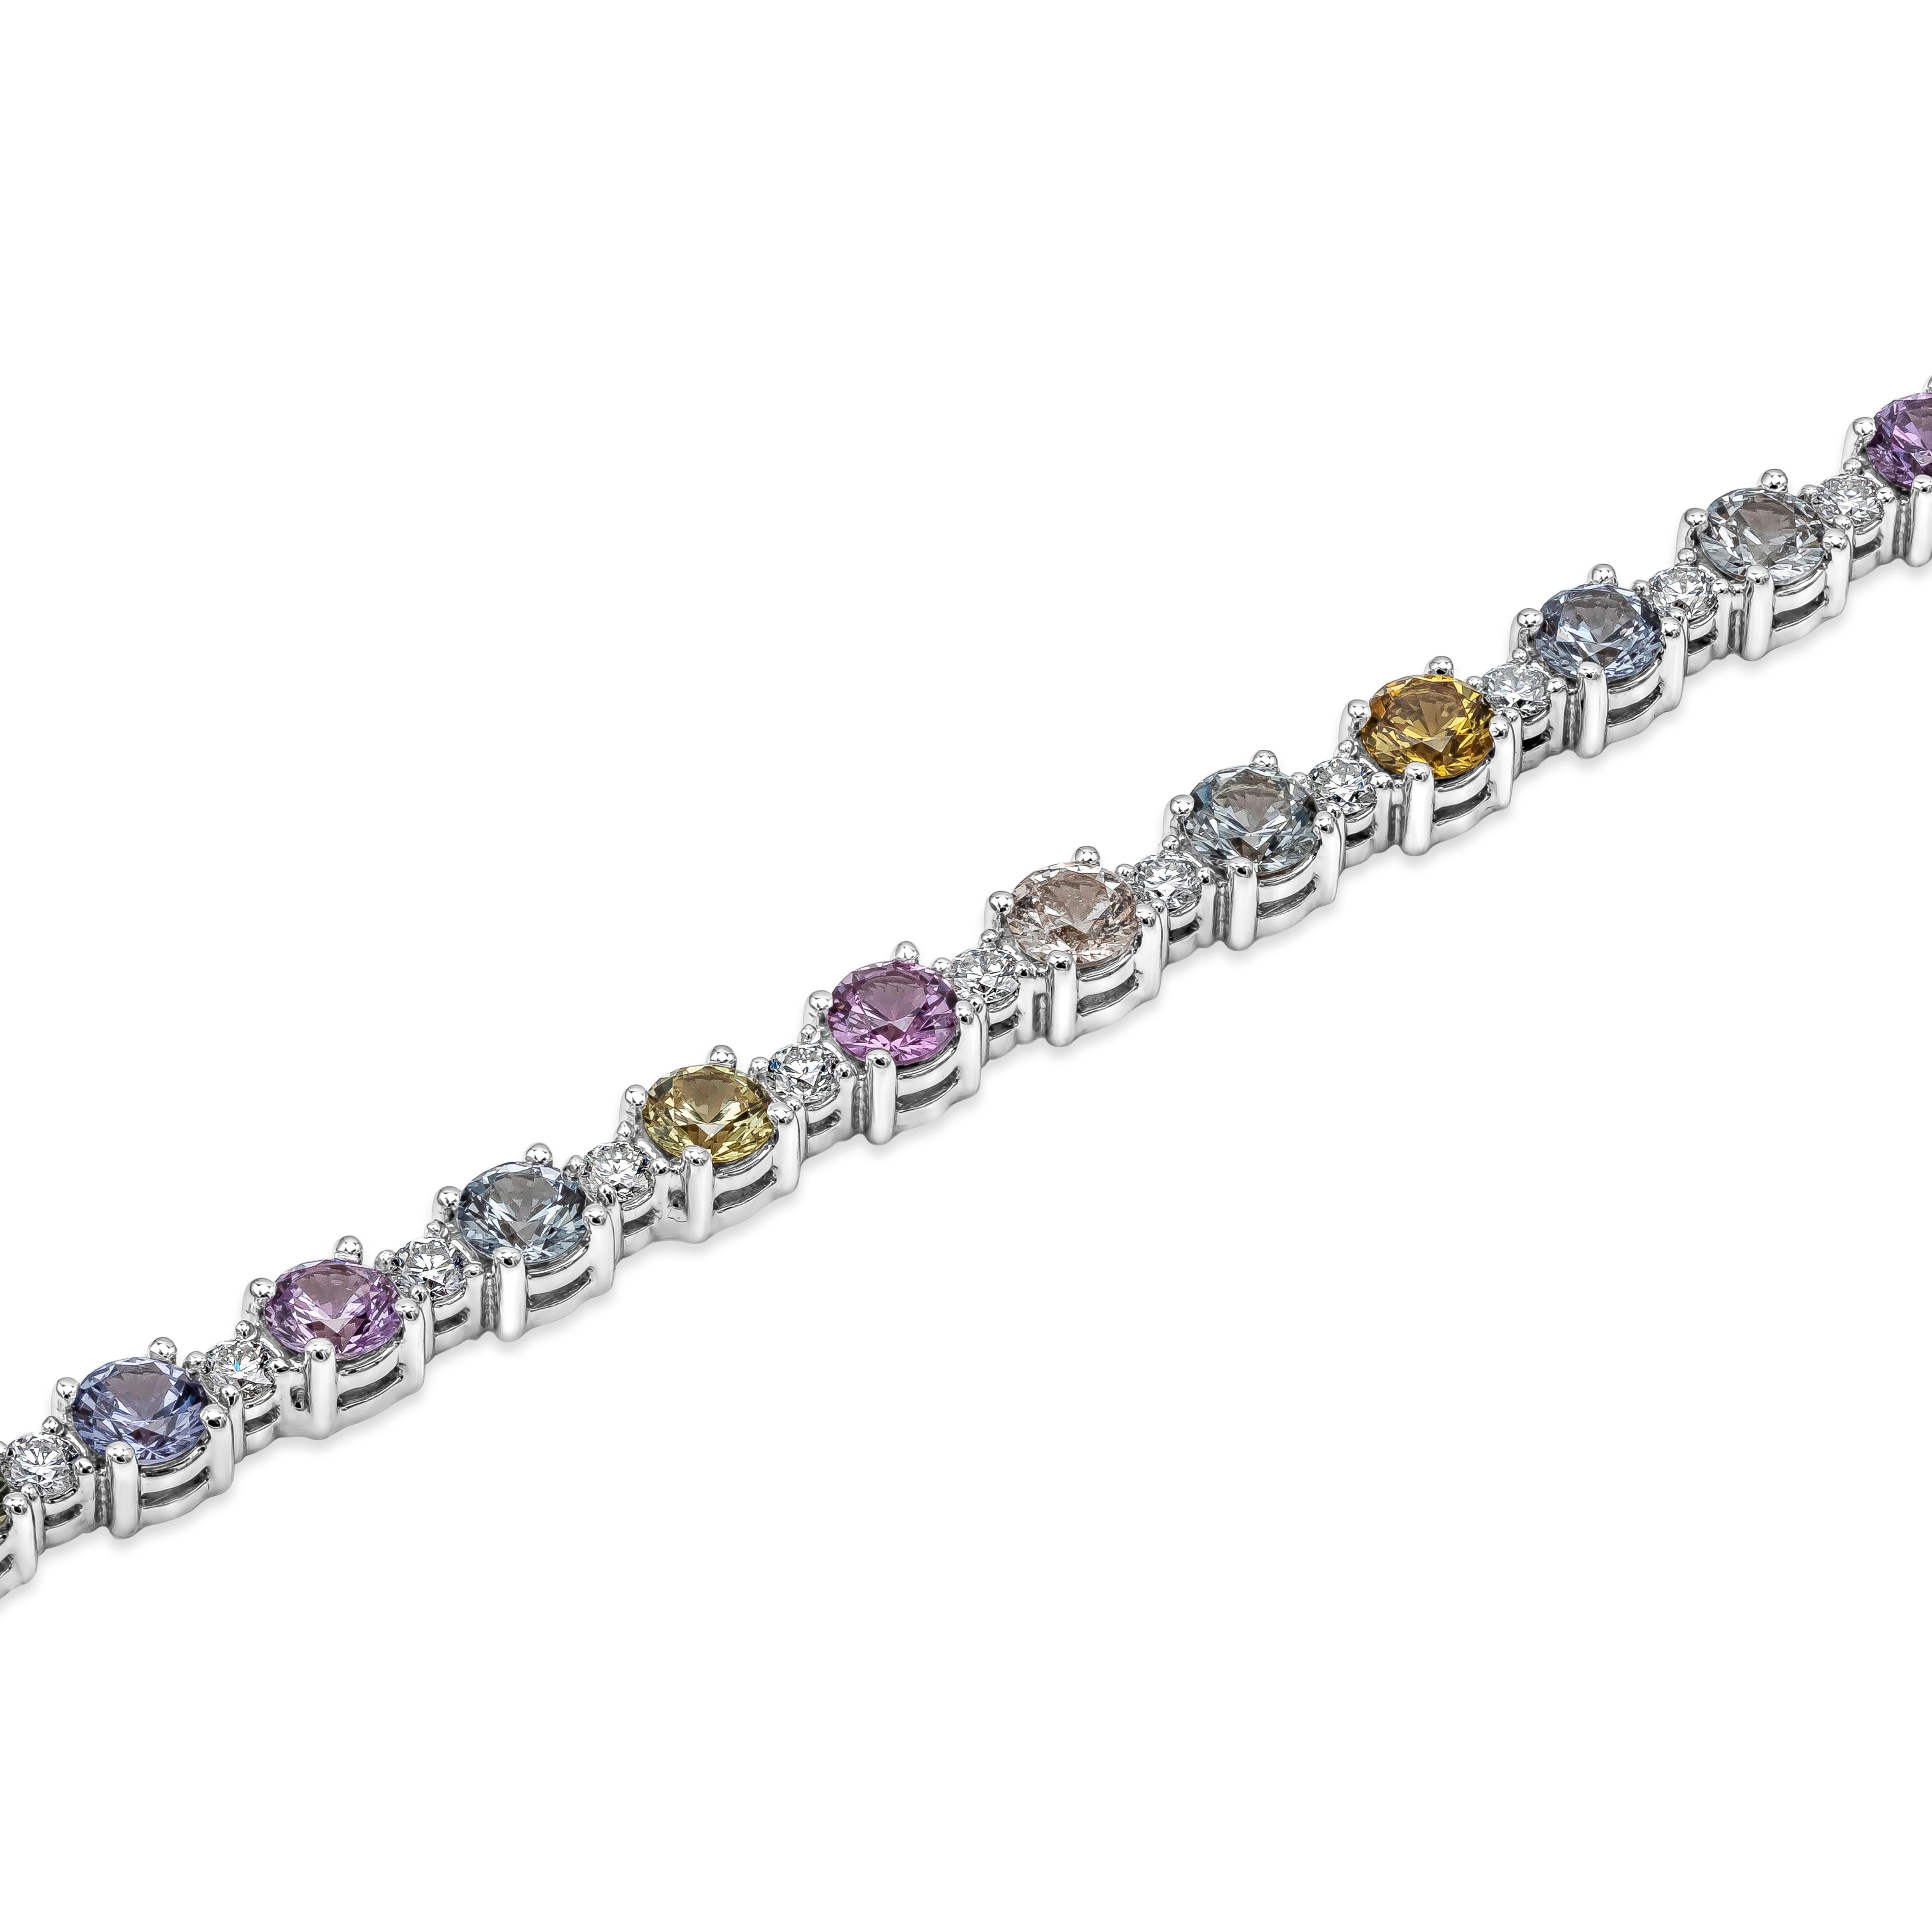 Dieses einzigartige und stilvolle Tennisarmband zeigt eine Reihe runder, mehrfarbiger Saphire, die gleichmäßig von runden Brillanten umgeben sind. Die Saphire haben ein Gesamtgewicht von 6,35 Karat und eine Reinheit von VVS. Die Diamanten wiegen